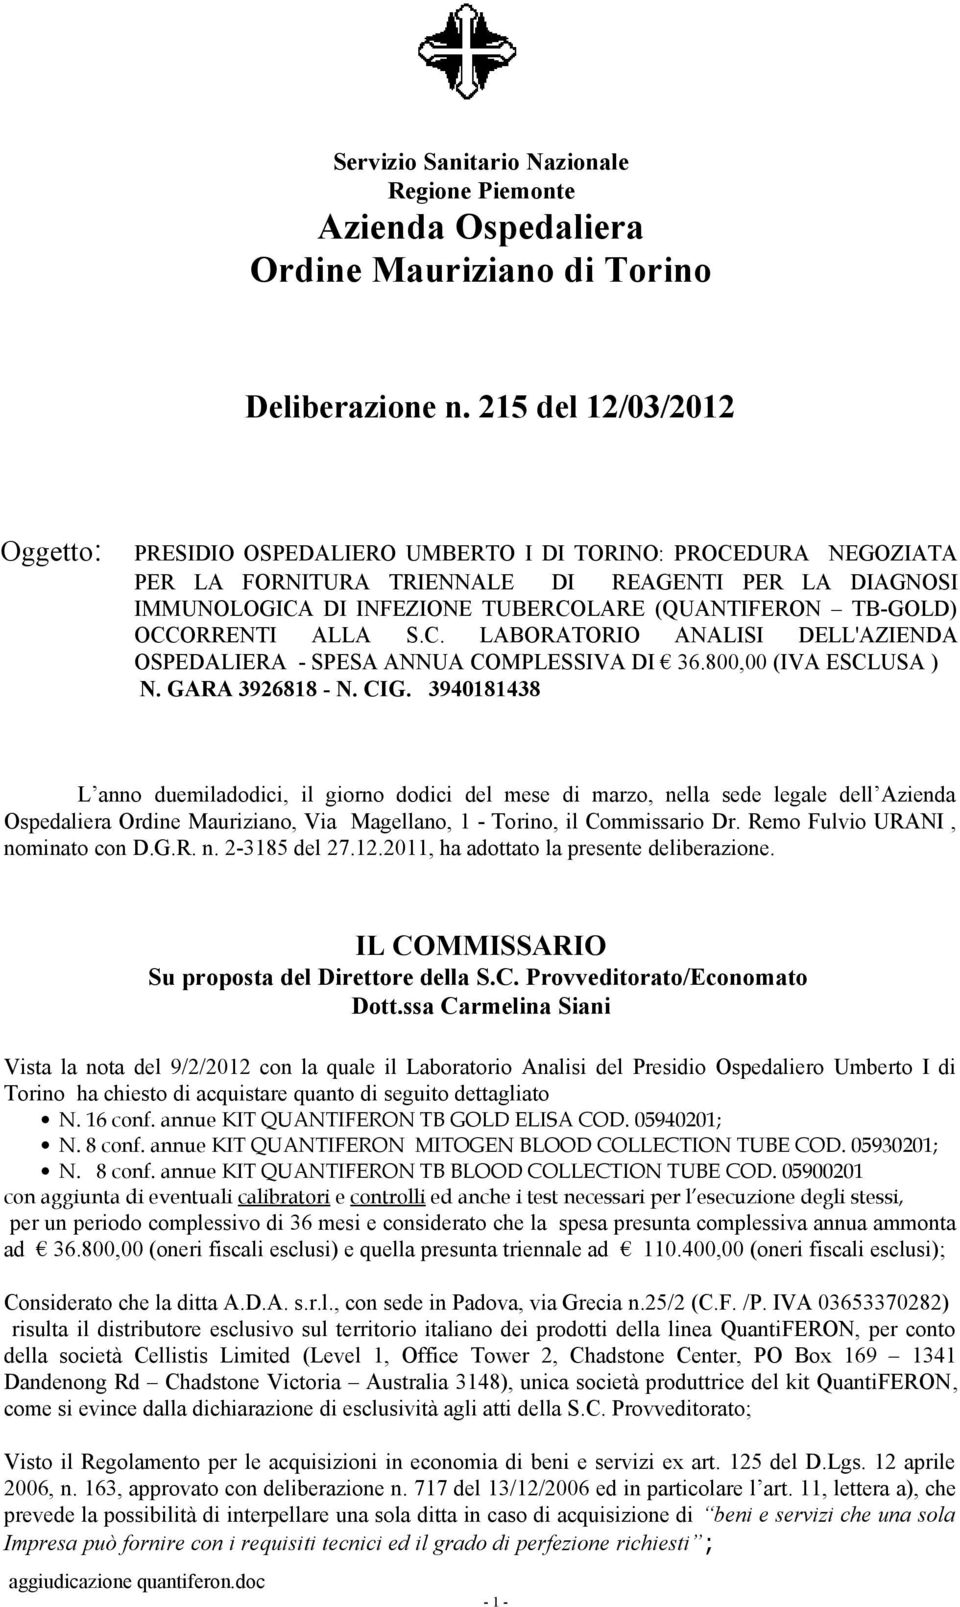 TB-GOLD) OCCORRENTI ALLA S.C. LABORATORIO ANALISI DELL'AZIENDA OSPEDALIERA - SPESA ANNUA COMPLESSIVA DI 36.800,00 (IVA ESCLUSA ) N. GARA 3926818 - N. CIG.